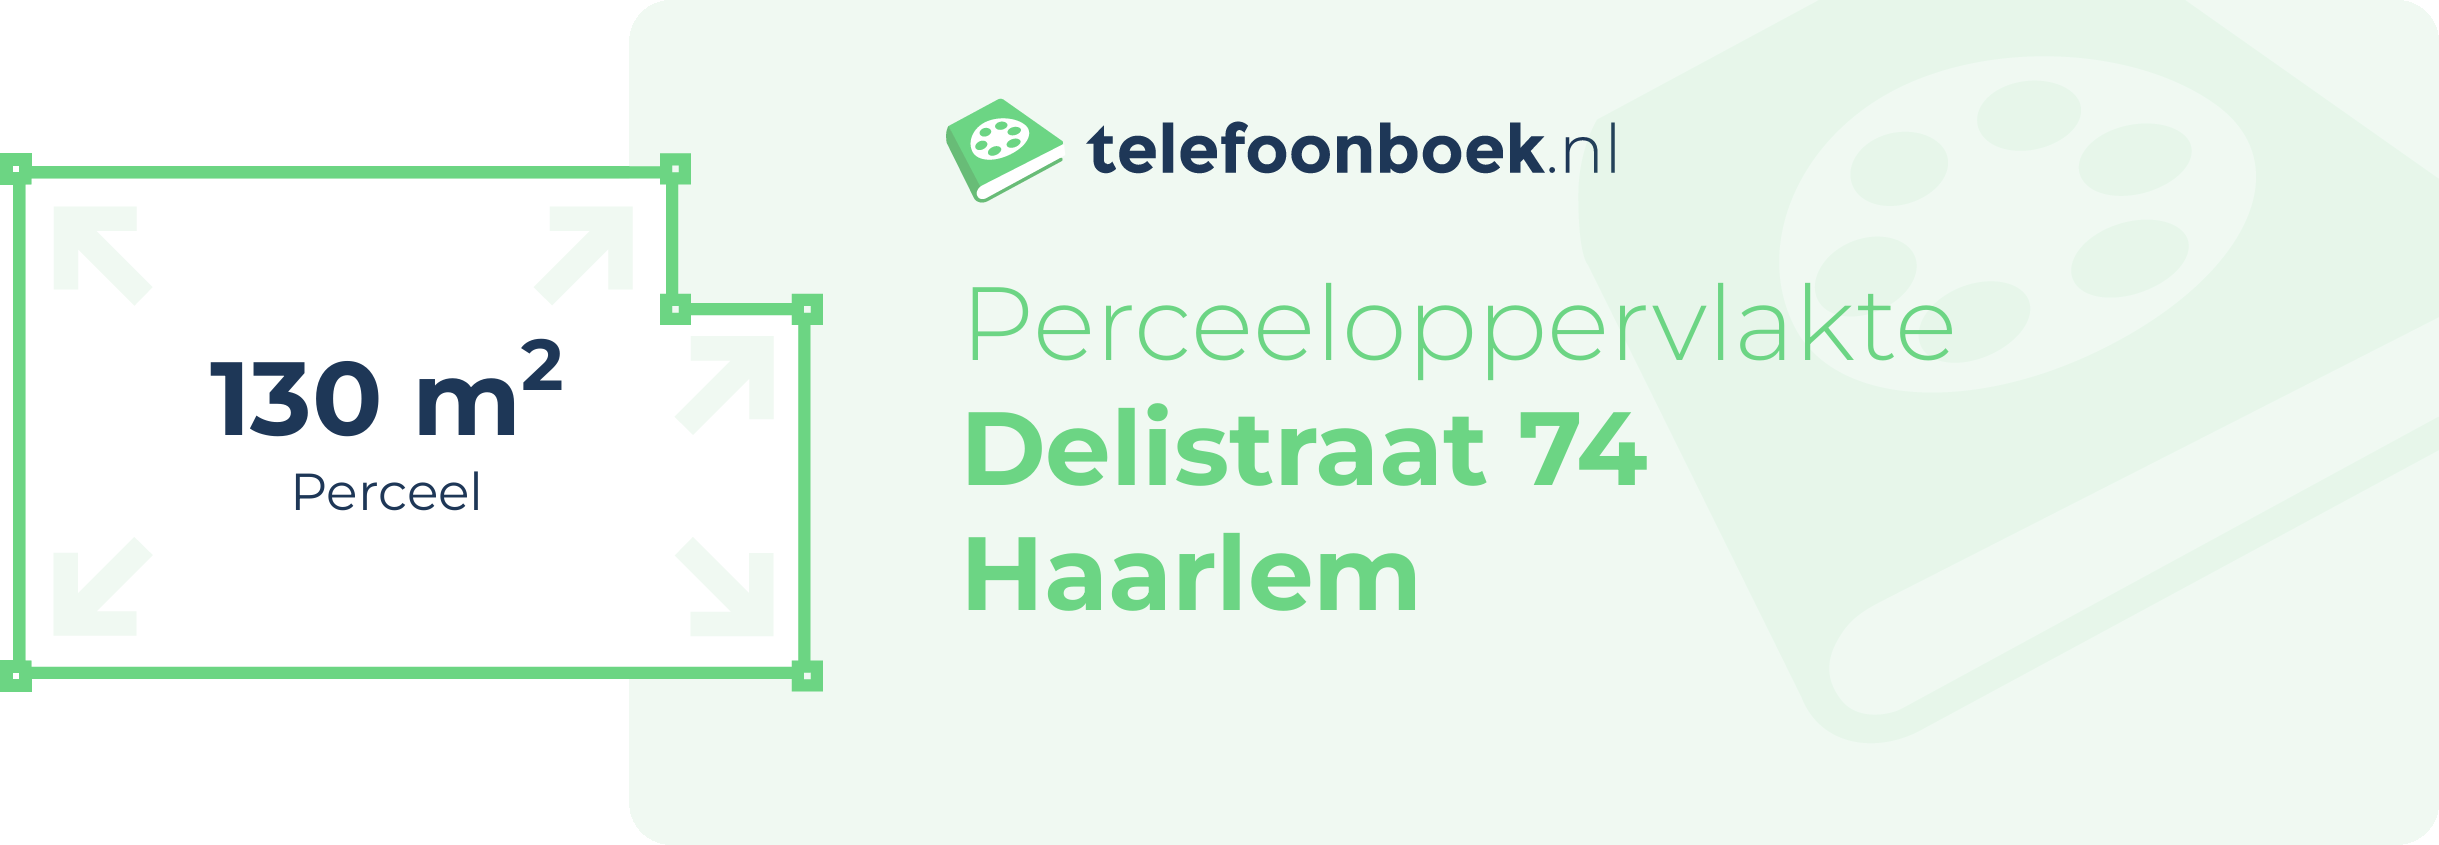 Perceeloppervlakte Delistraat 74 Haarlem